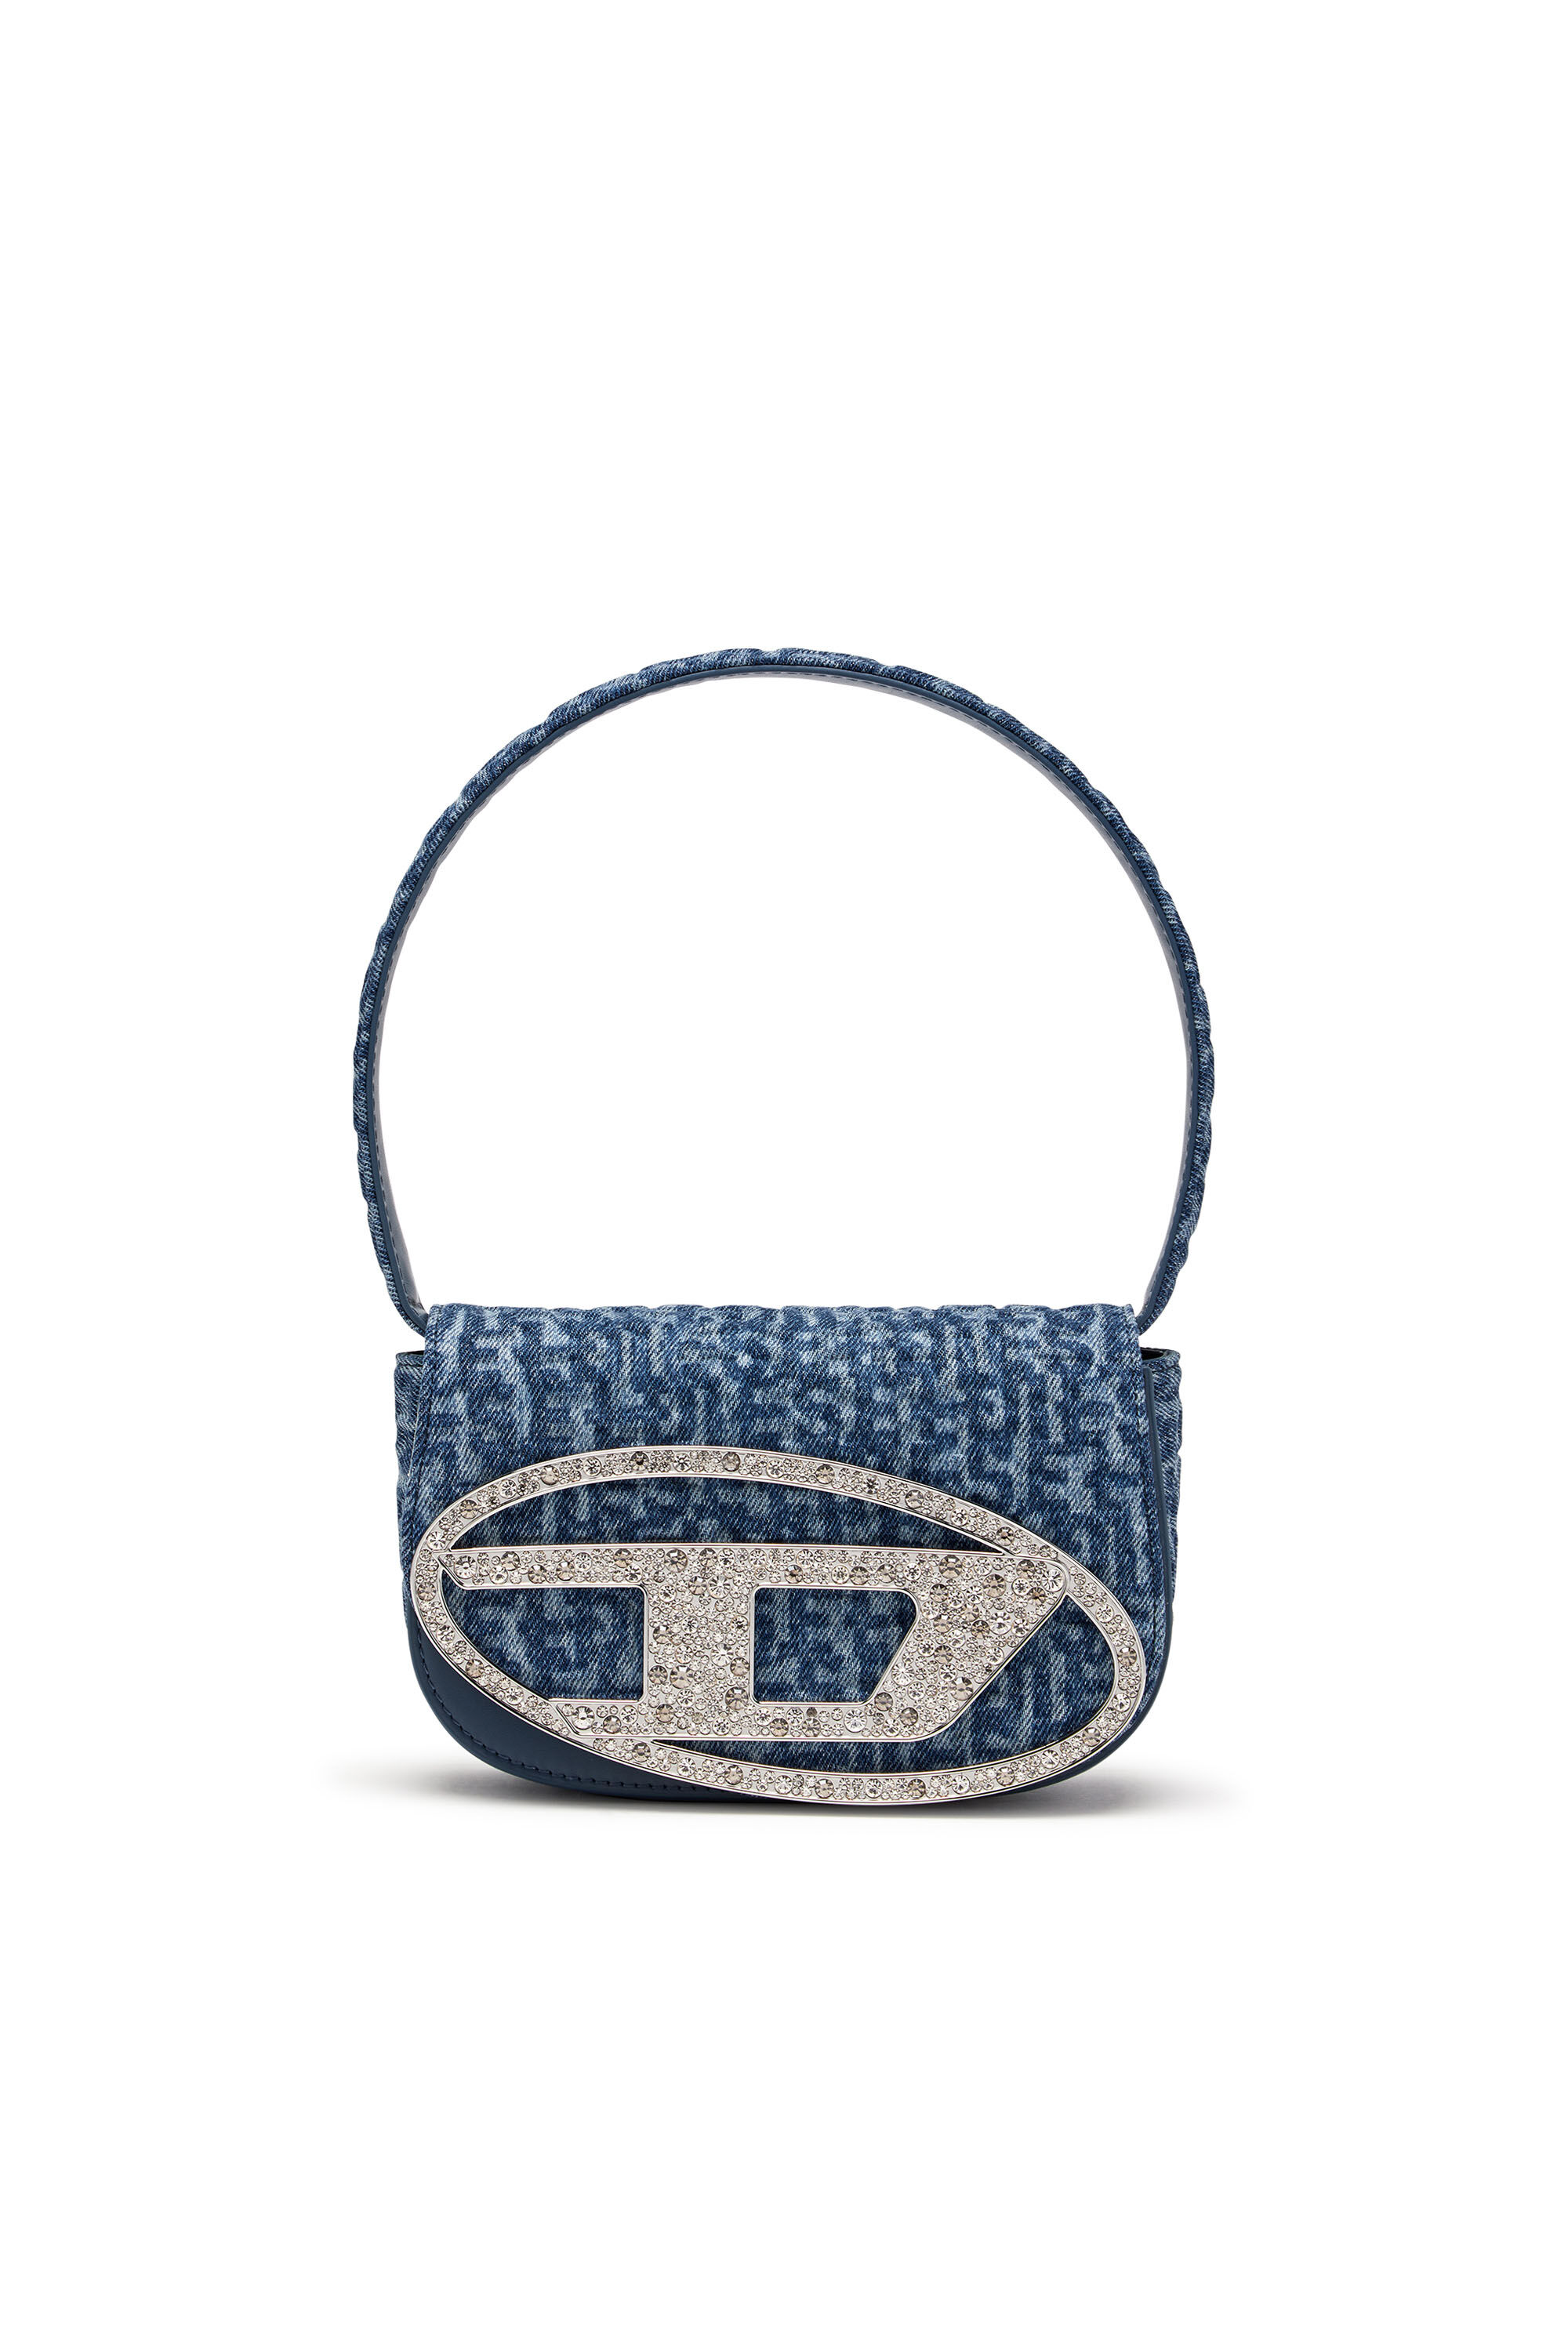 DIESEL 1dr - Iconic Monogram Shoulder Bag In Crystal Canvas - Shoulder Bags  - Woman - Blue